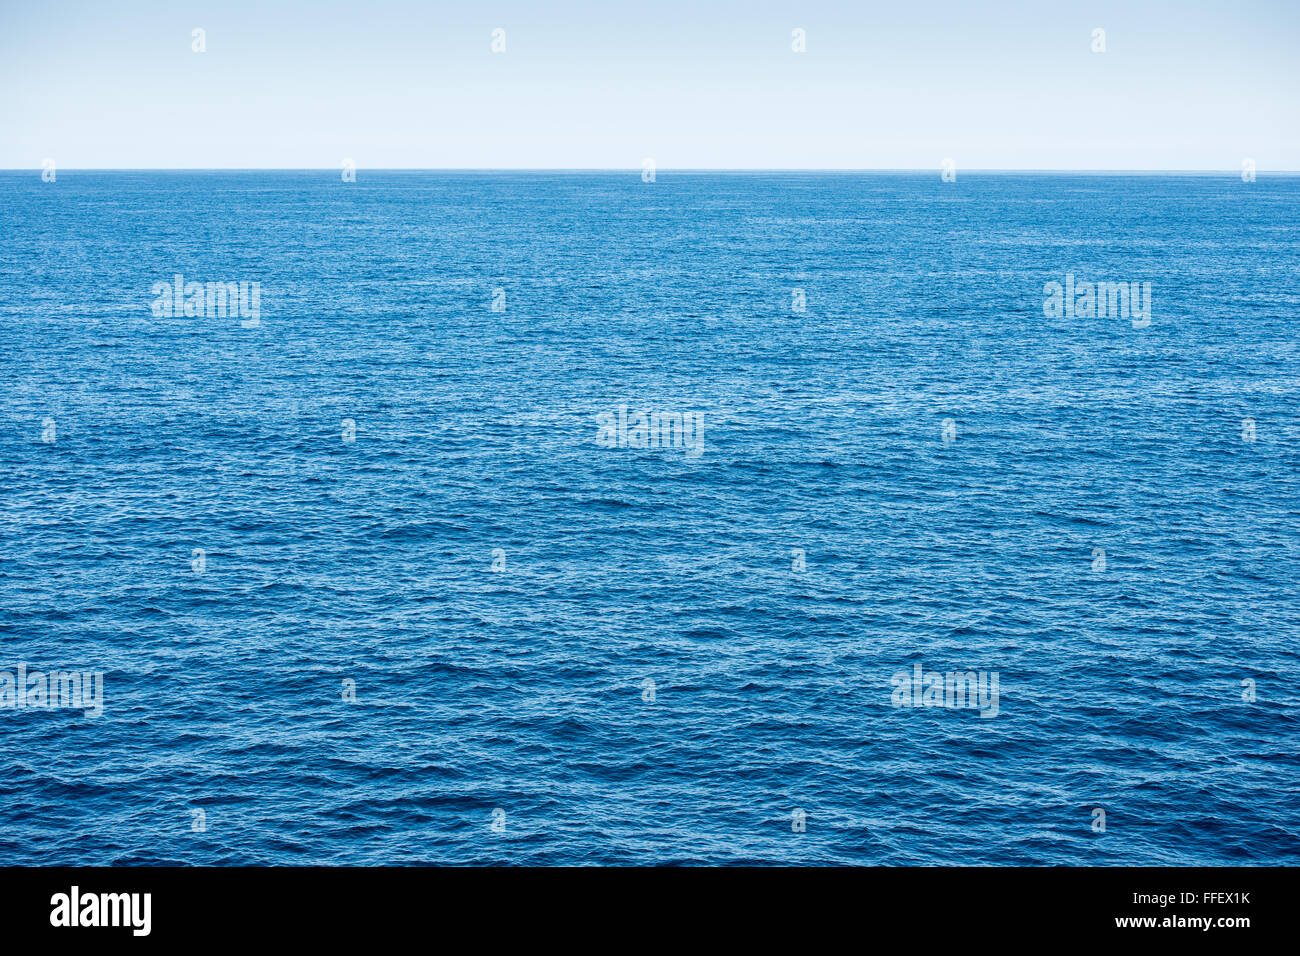 L'océan bleu avec fond bleu ciel et l'eau d'un bleu profond Banque D'Images